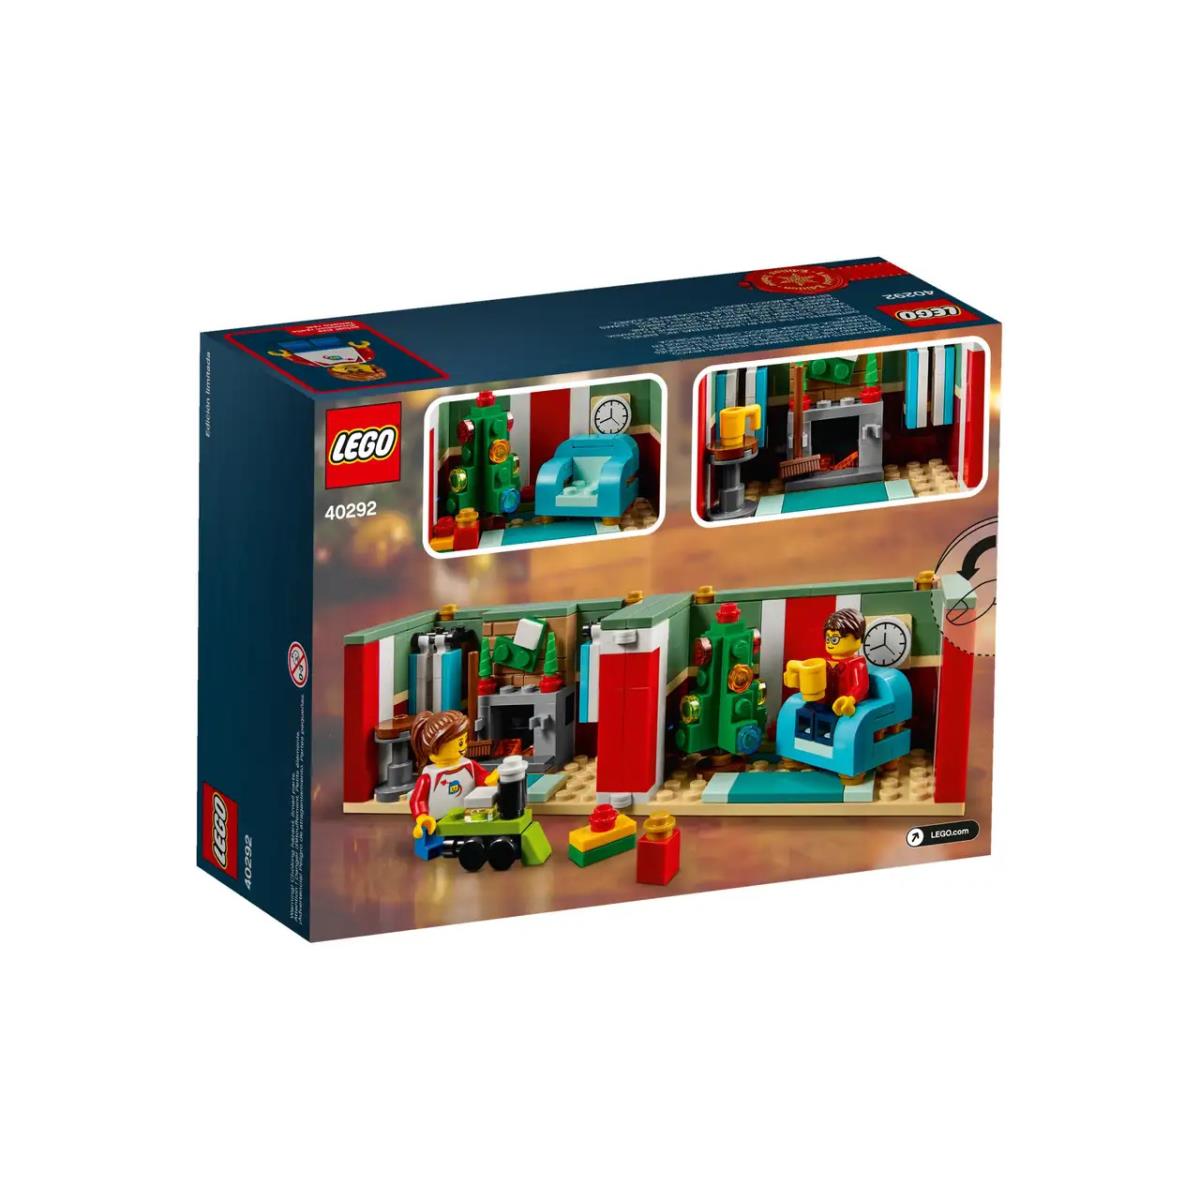 Lego Present 2018 Store Limited Edition 40292 Nib